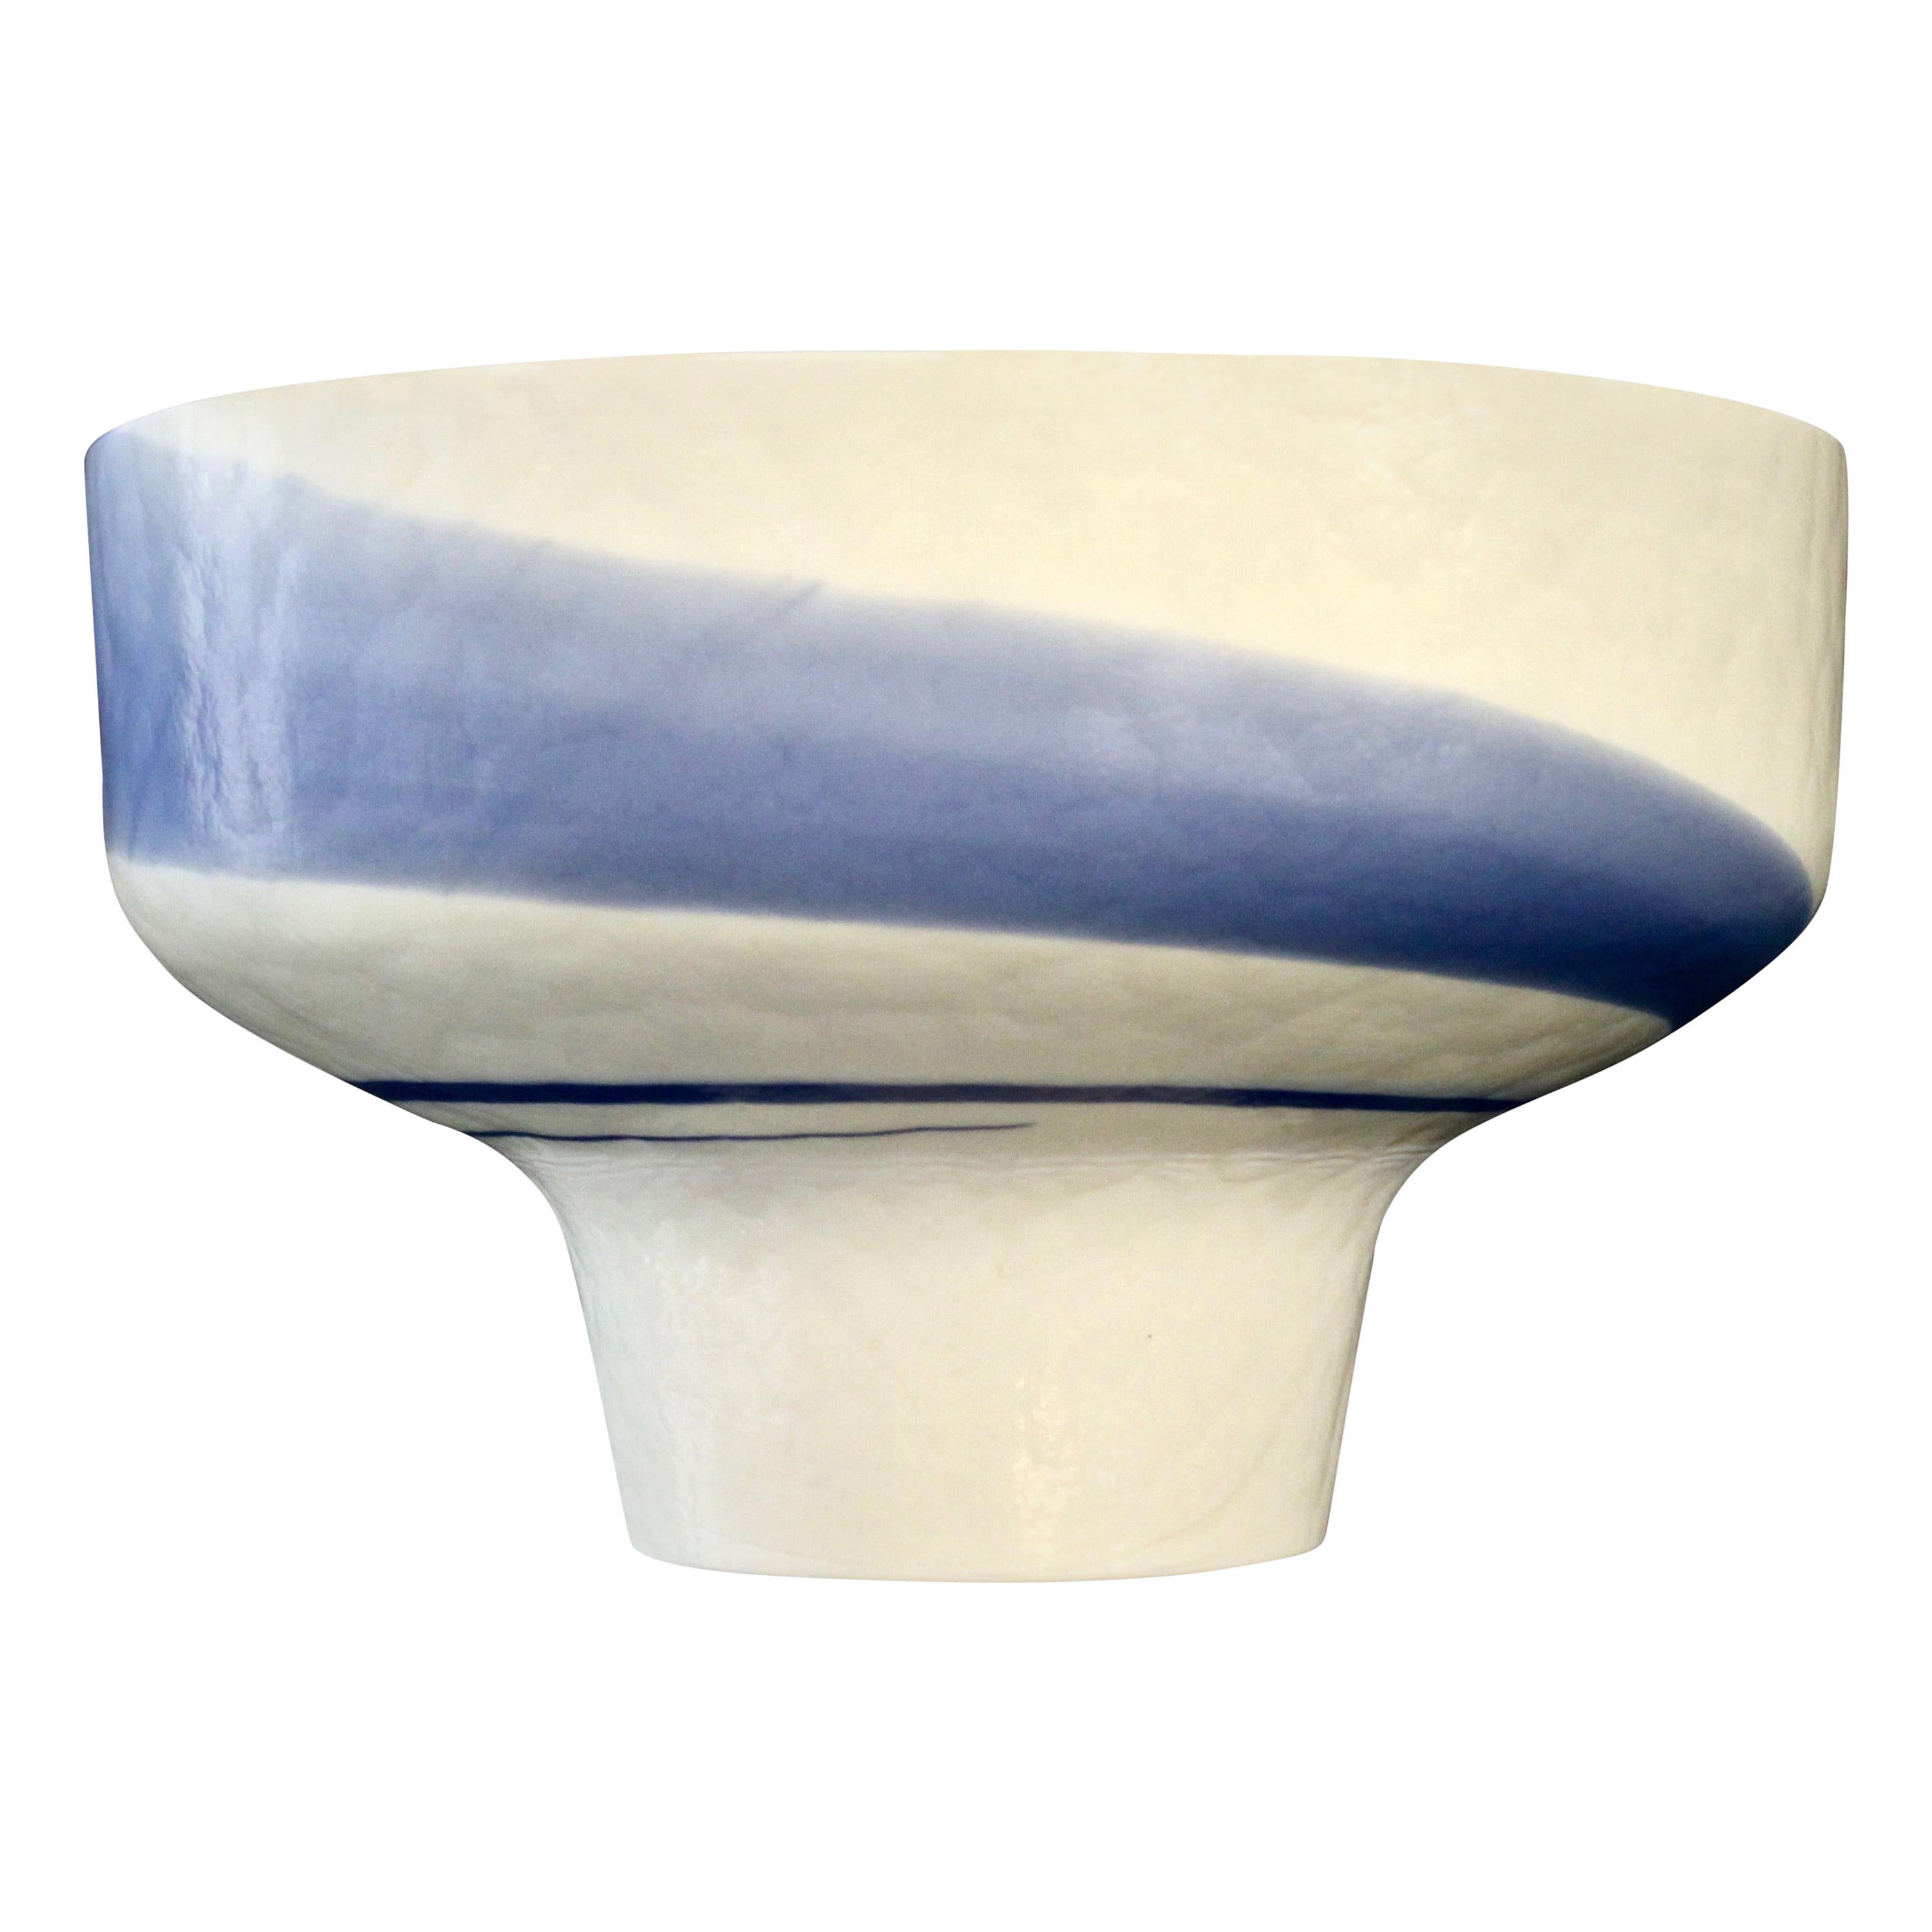 1950s Venini Vintage Italian Blue & Cream White Pate De Verre Murano Glass Bowl For Sale